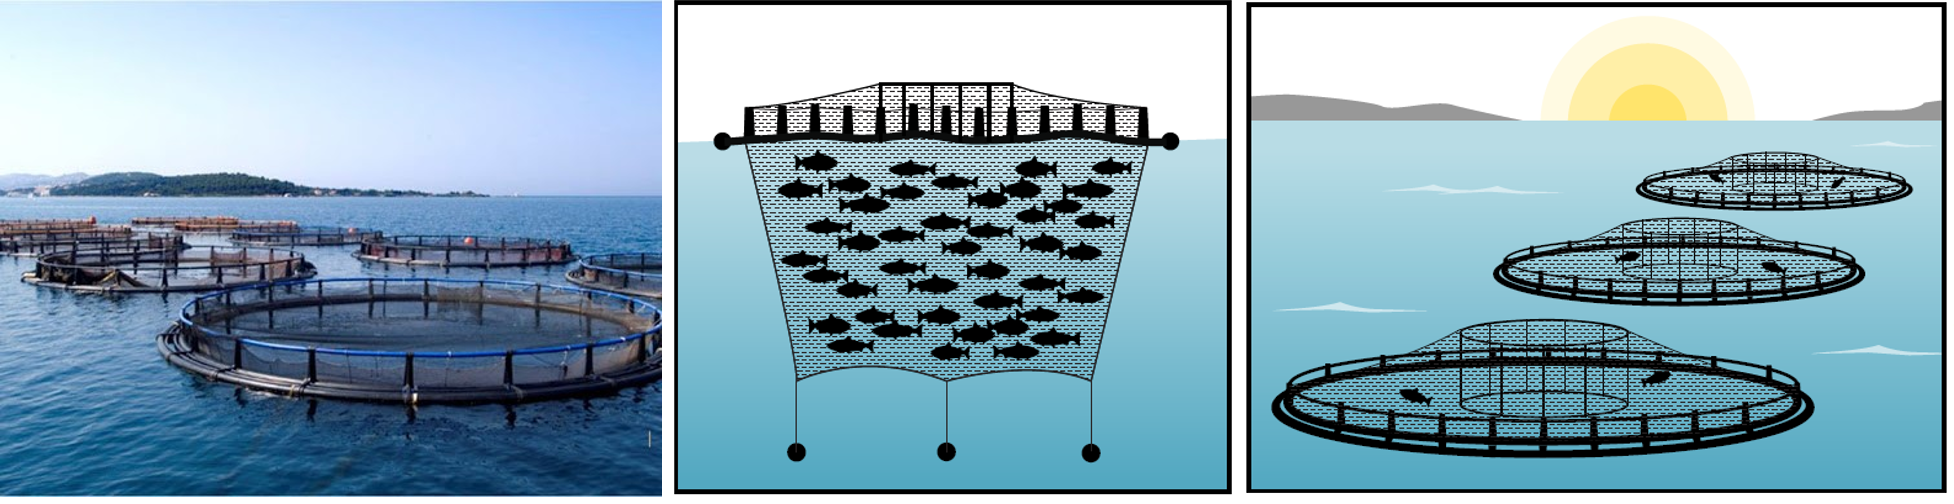 pamamaraan ng pagsasaka ng mga cages ng salmon